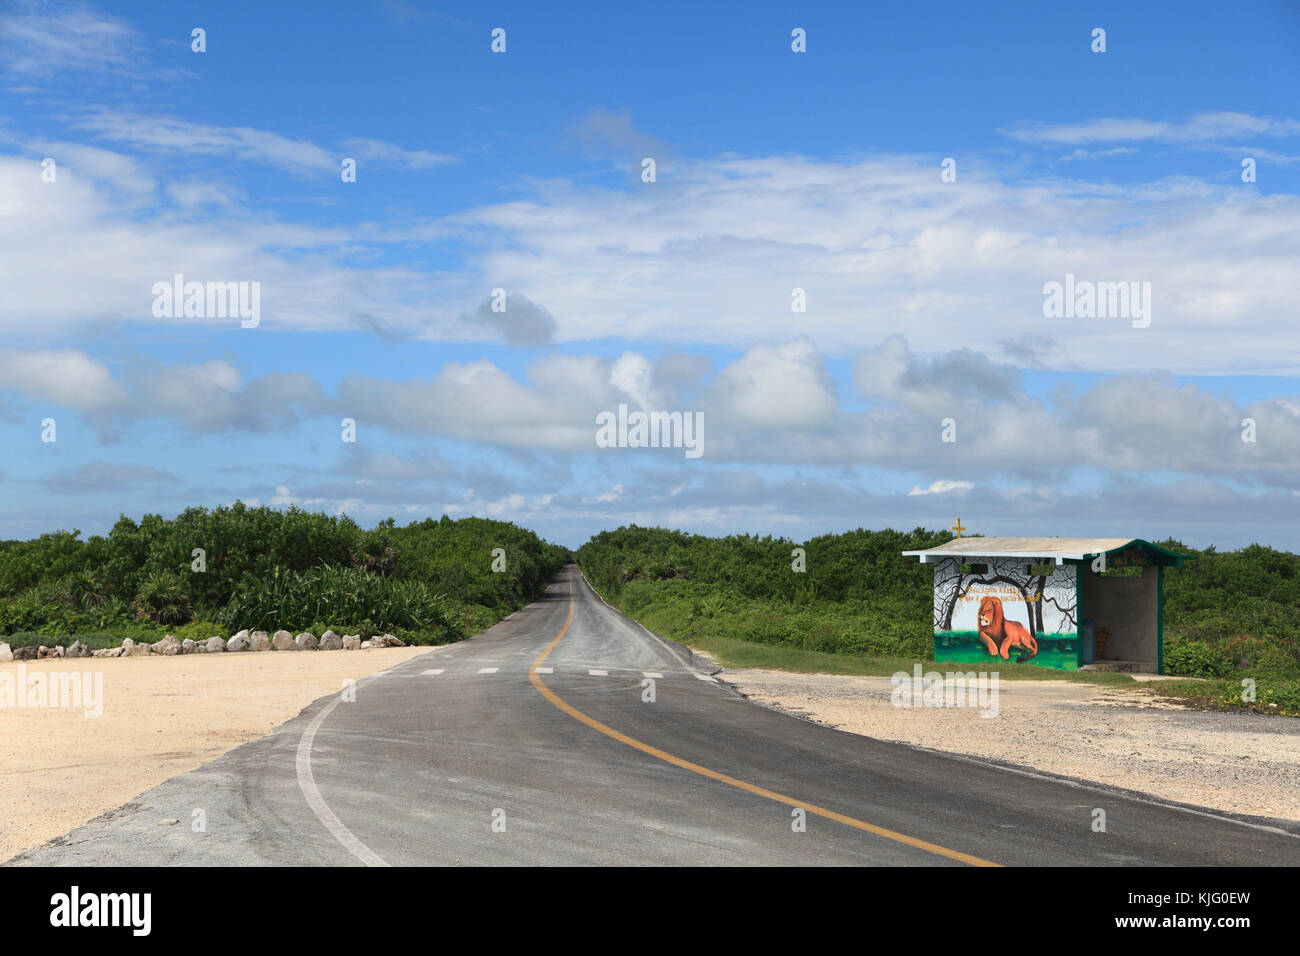 Vacía la carretera costera, subdesarrollado, costa este de la isla de Cozumel, Isla de Cozumel, Quintana Roo, México, el Caribe Foto de stock